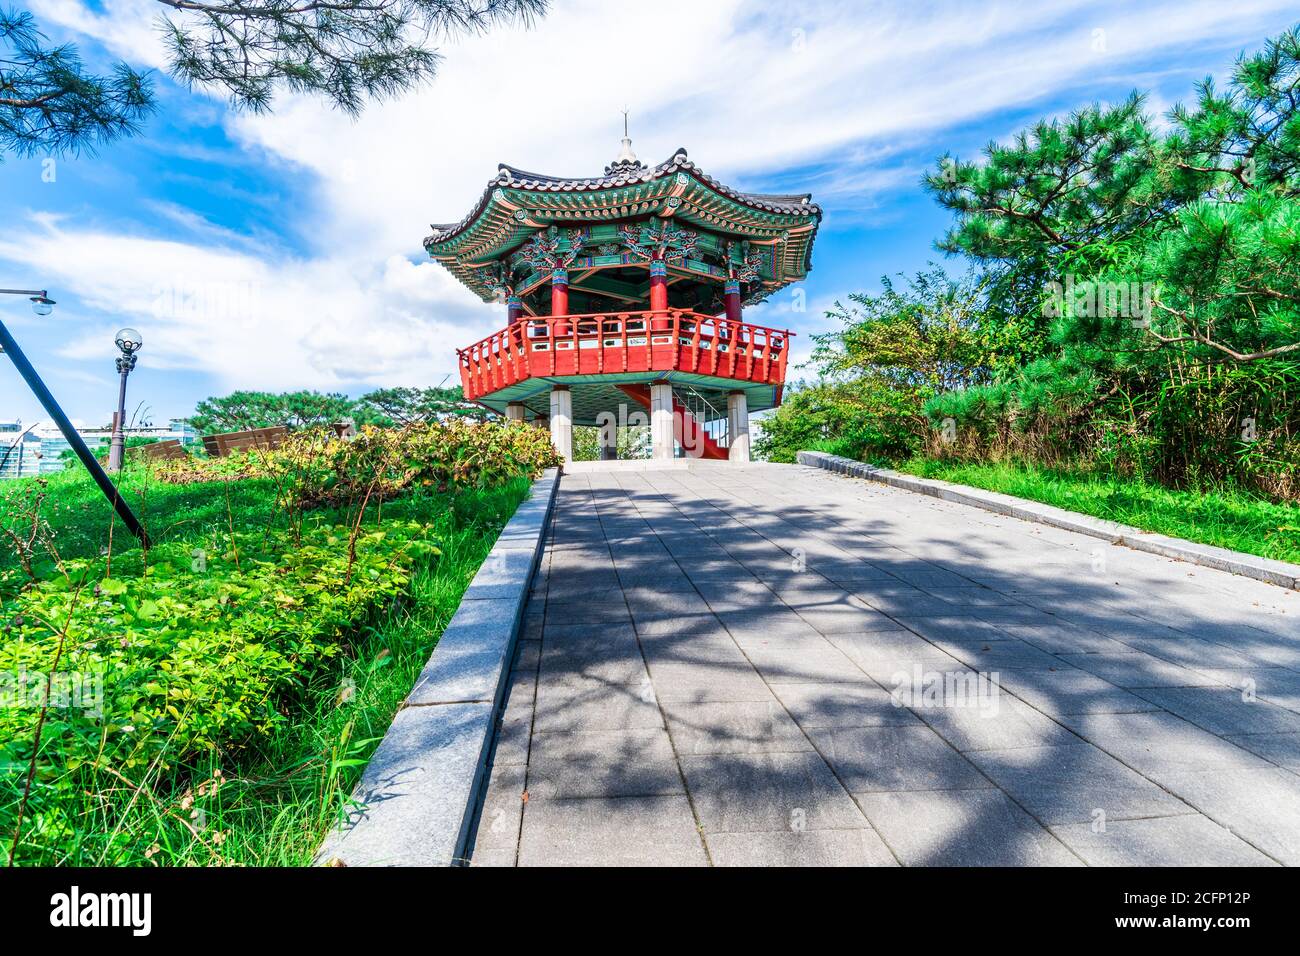 Pavillon traditionnel coréen du parc du lac Ilsan, dans le district d'Ilsan de Goyang, en Corée du Sud. Banque D'Images